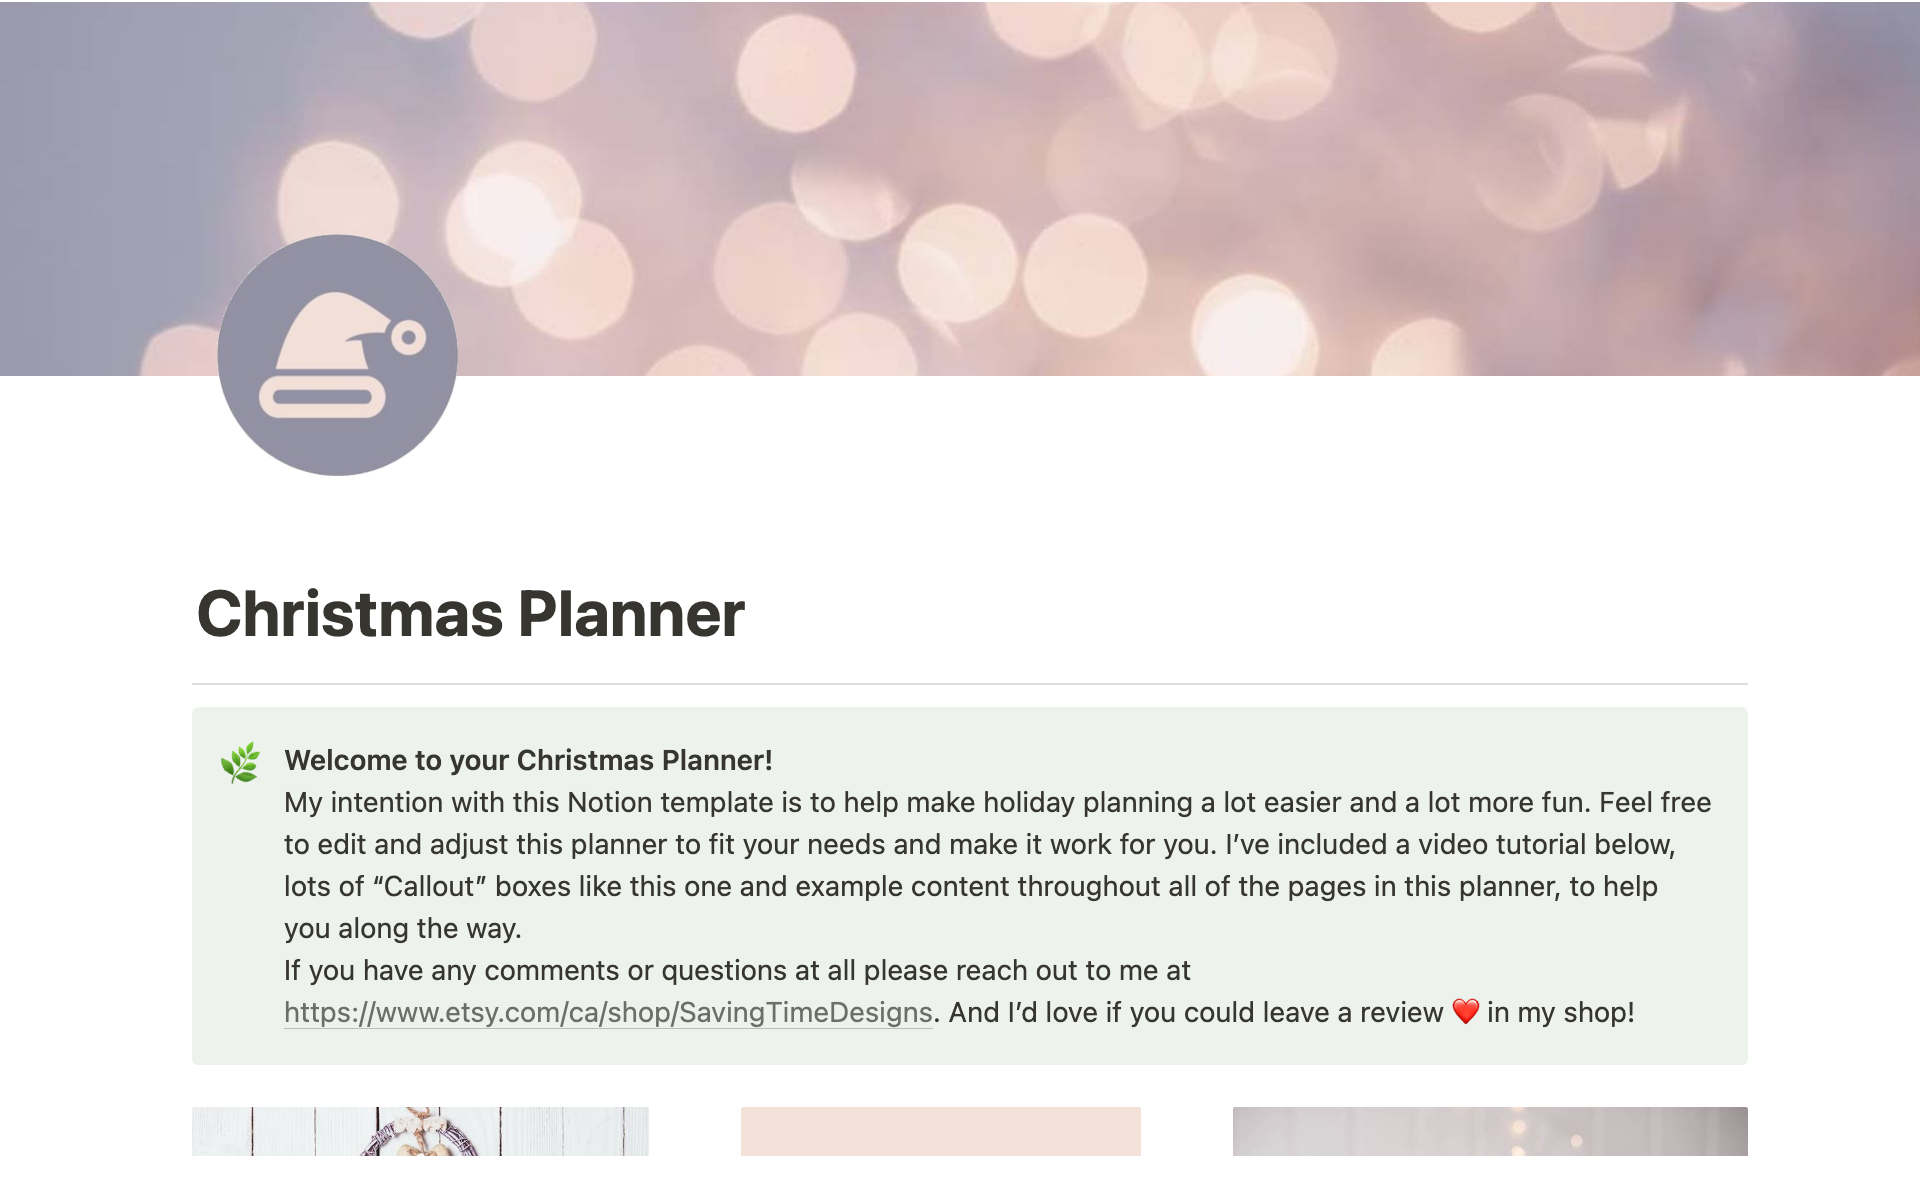 Helps people plan their Christmas/holiday season.